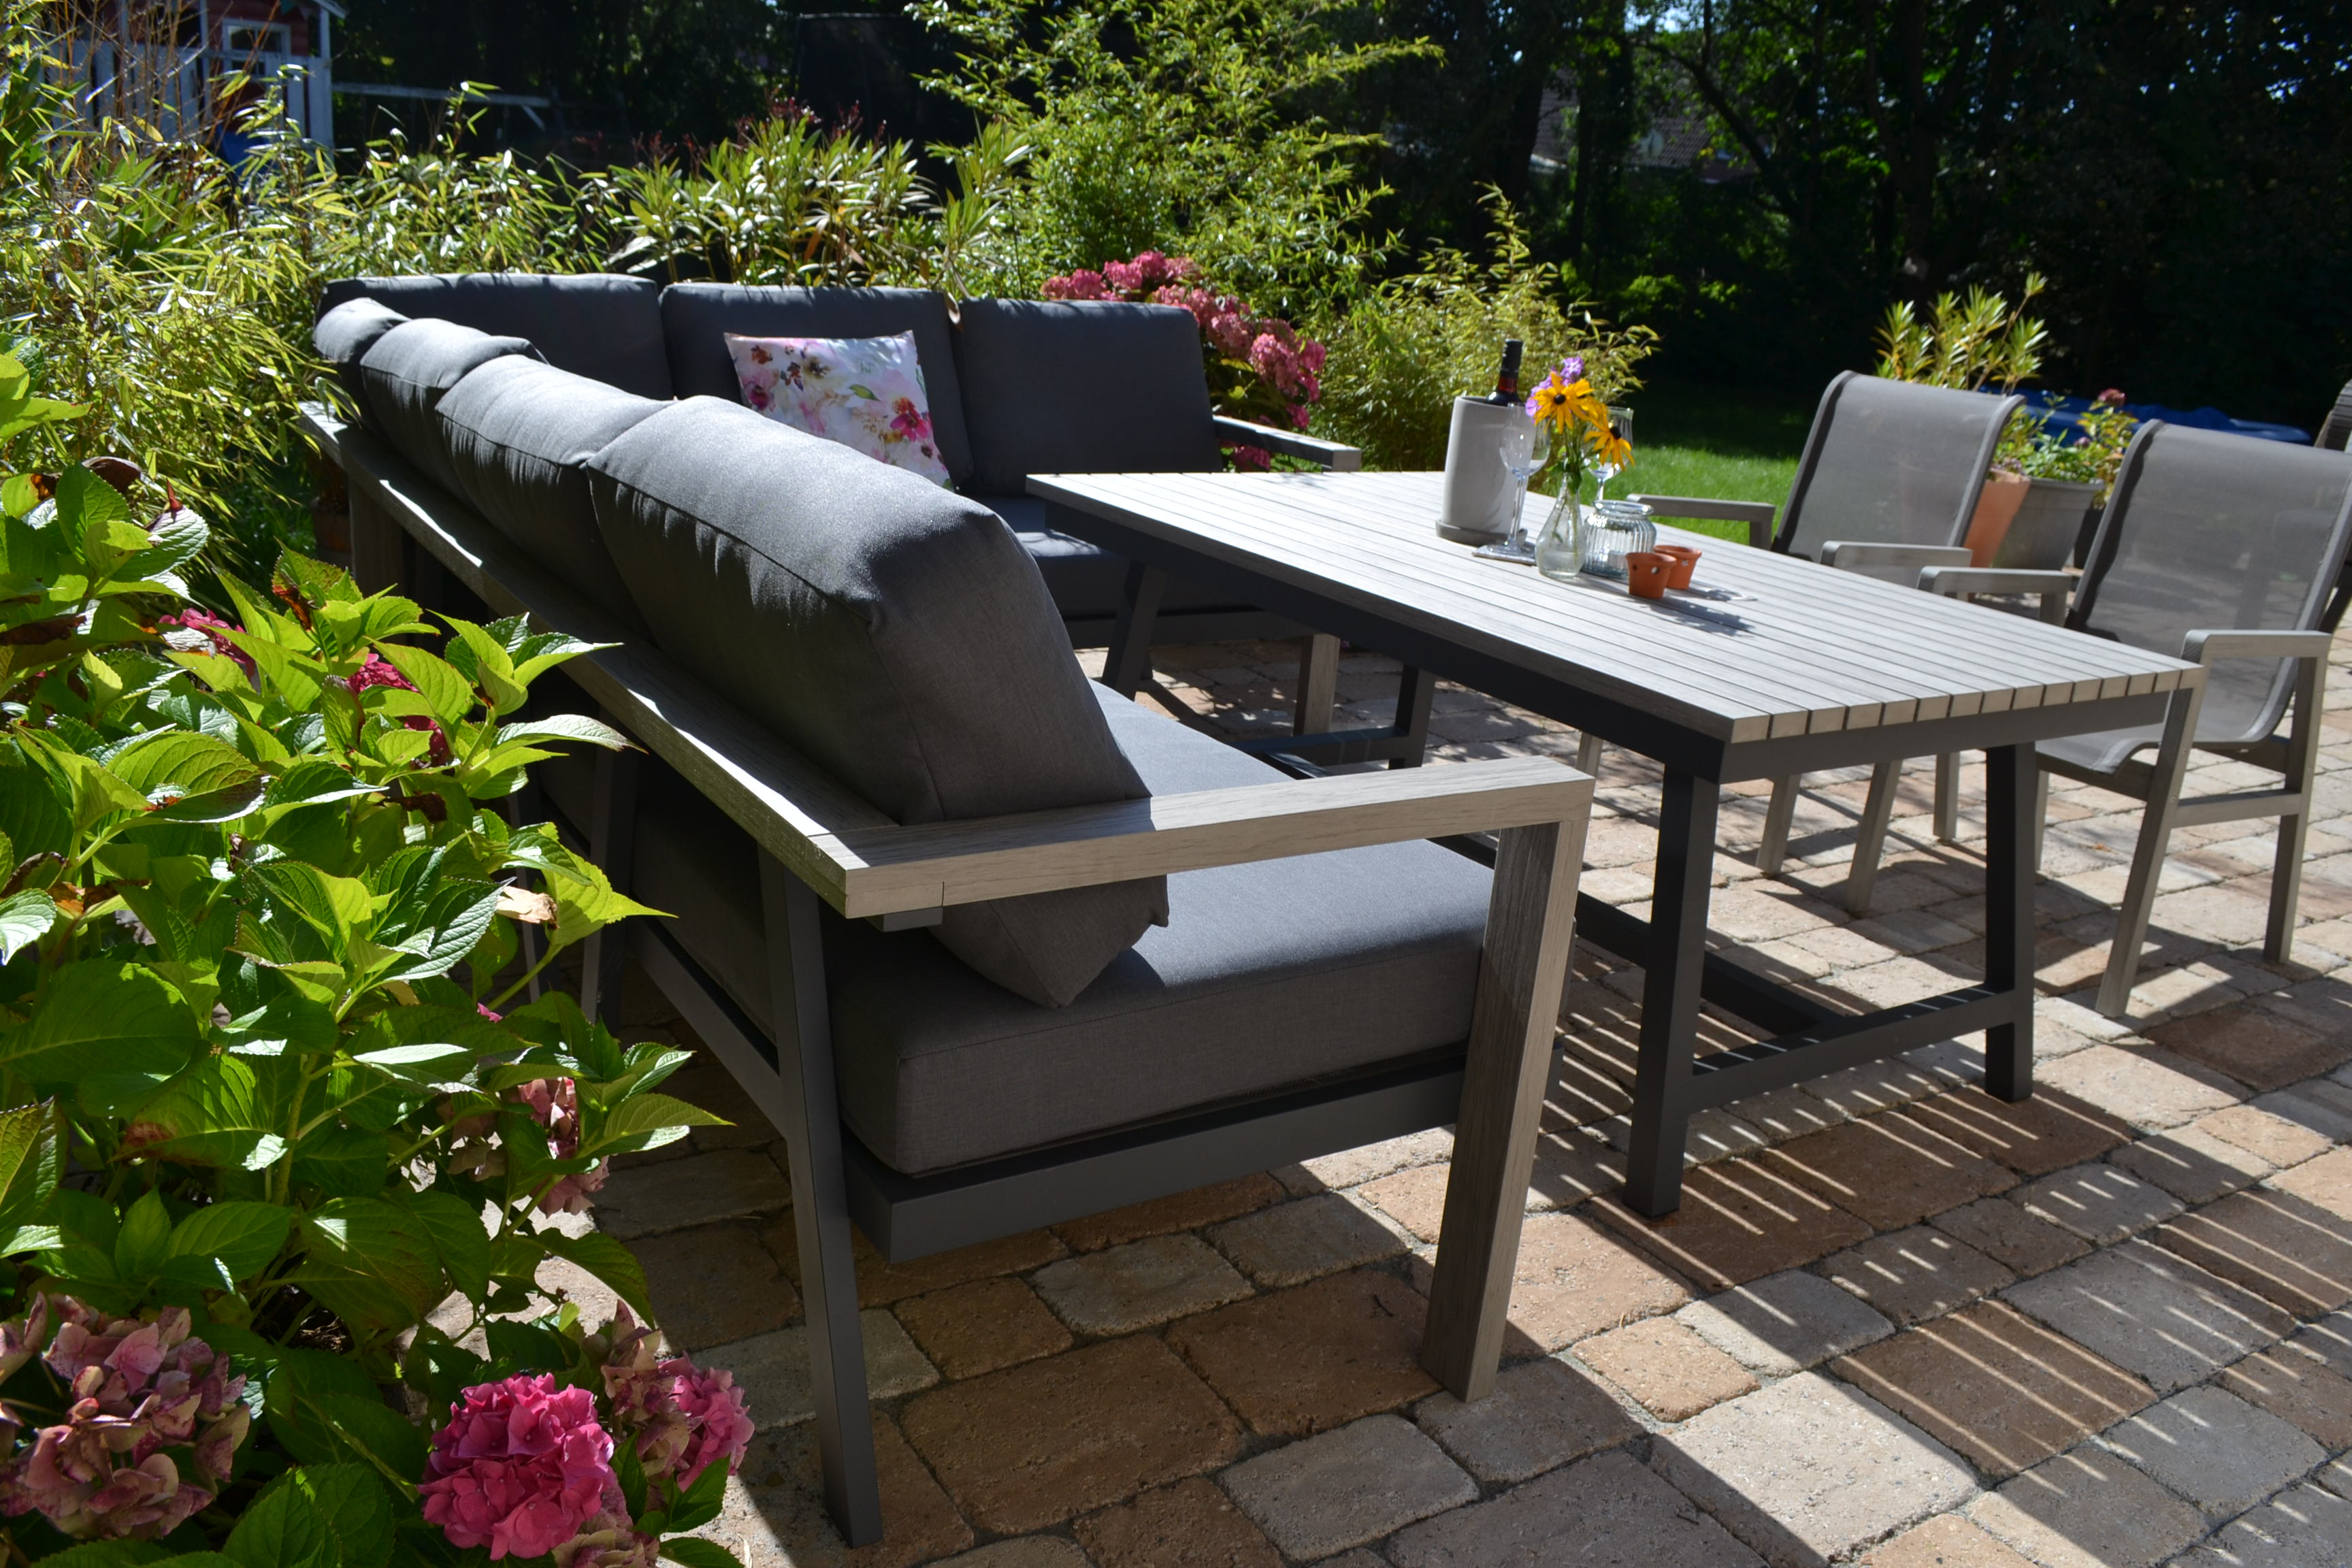 große Garten Ecklounge Morgana + 2 Stühle Flavium + Tisch 165x100cm Vintage Grey - lange Seite links